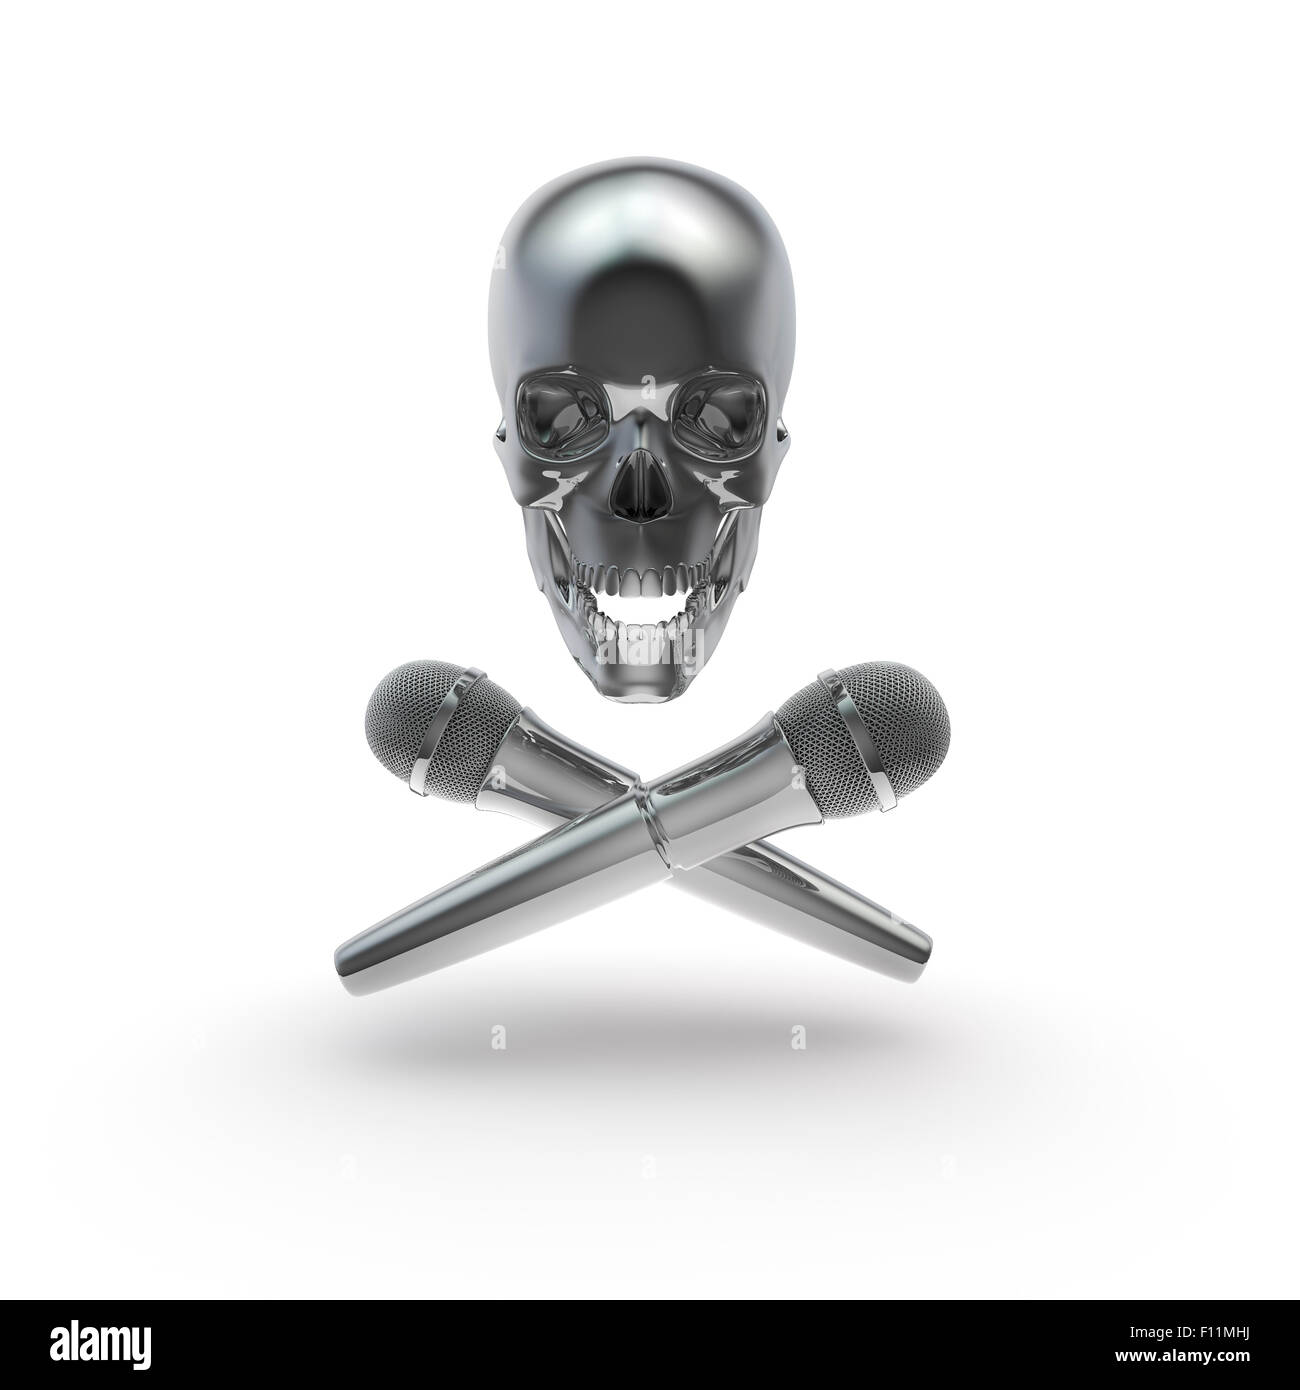 Pirate de la musique, de rendu 3D Tête de mort avec microphones Banque D'Images